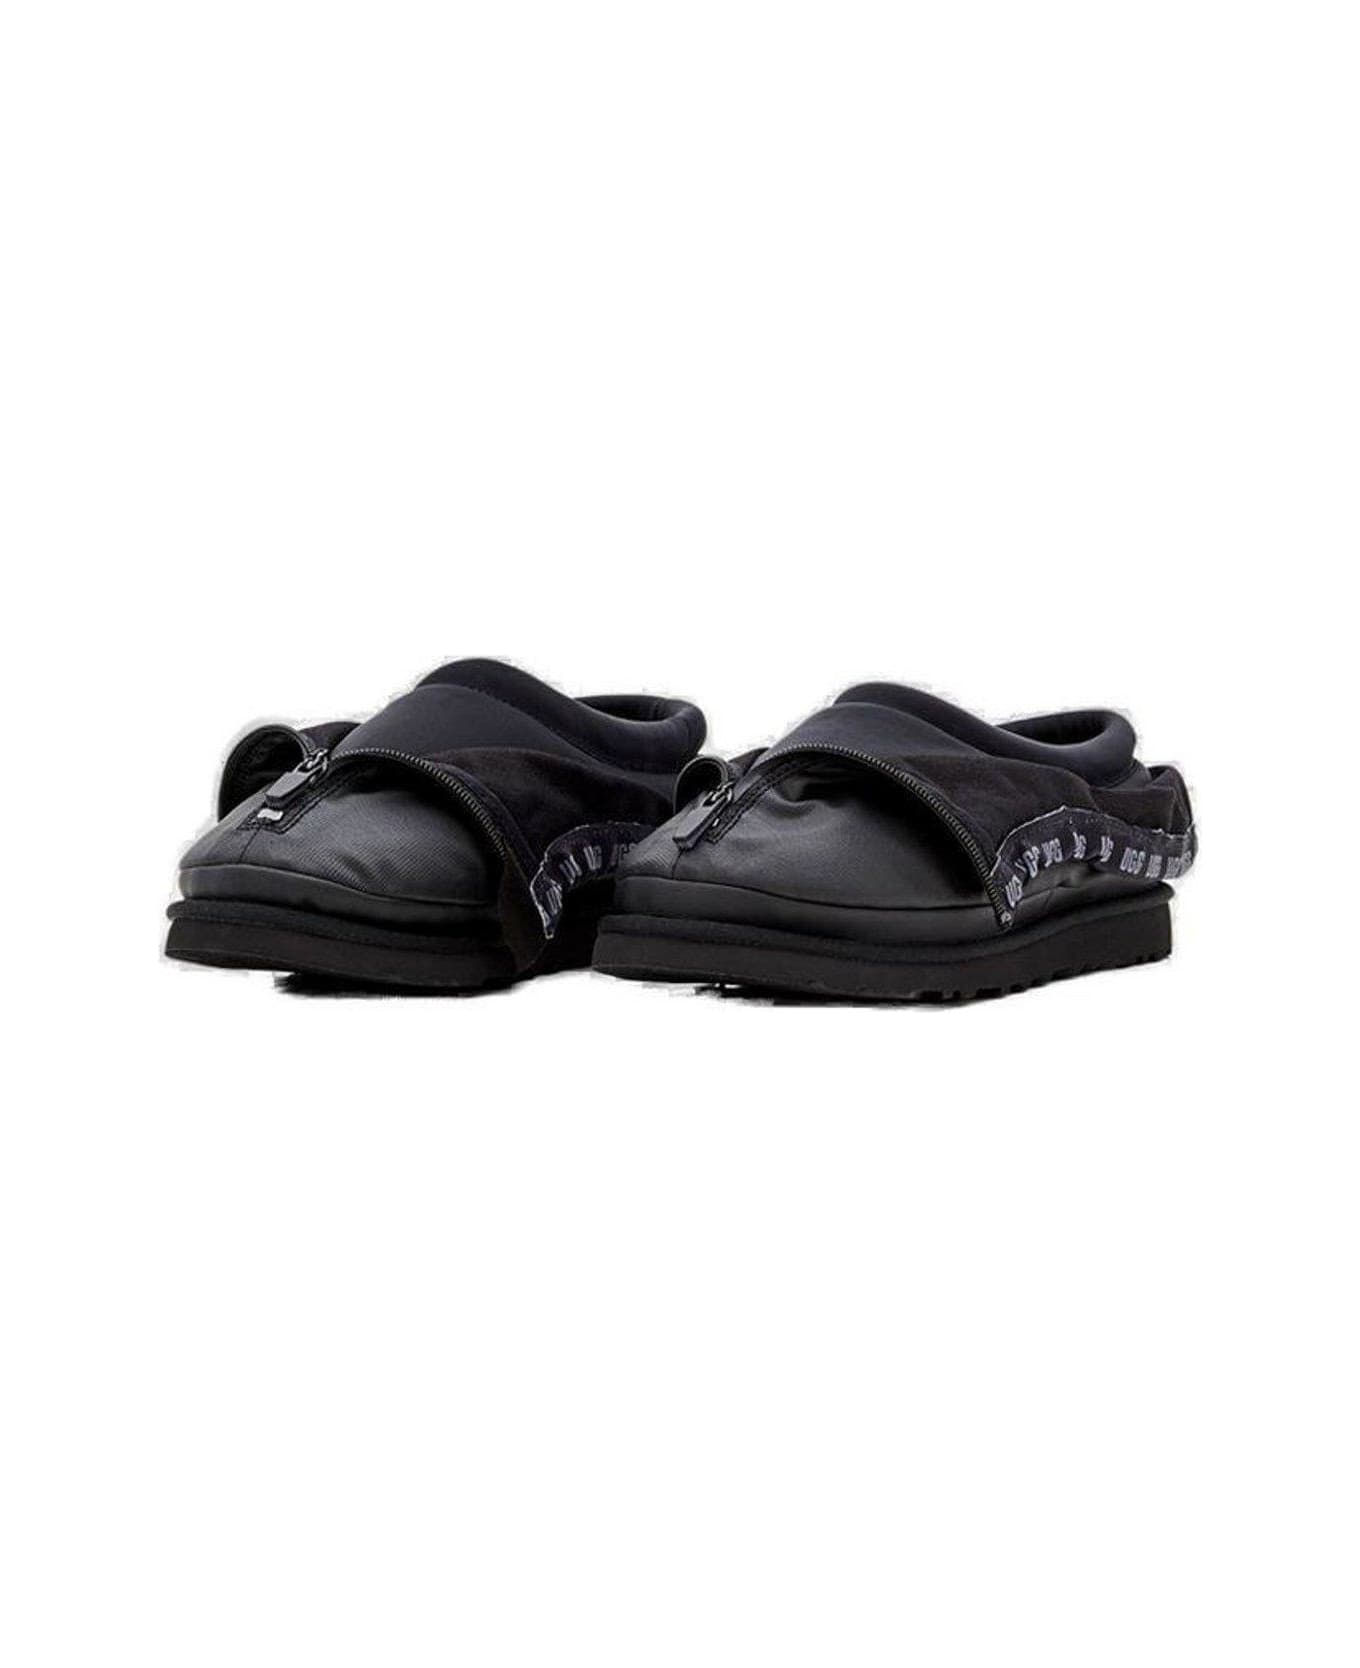 UGG Tasman Shroud Zip Slippers - Black